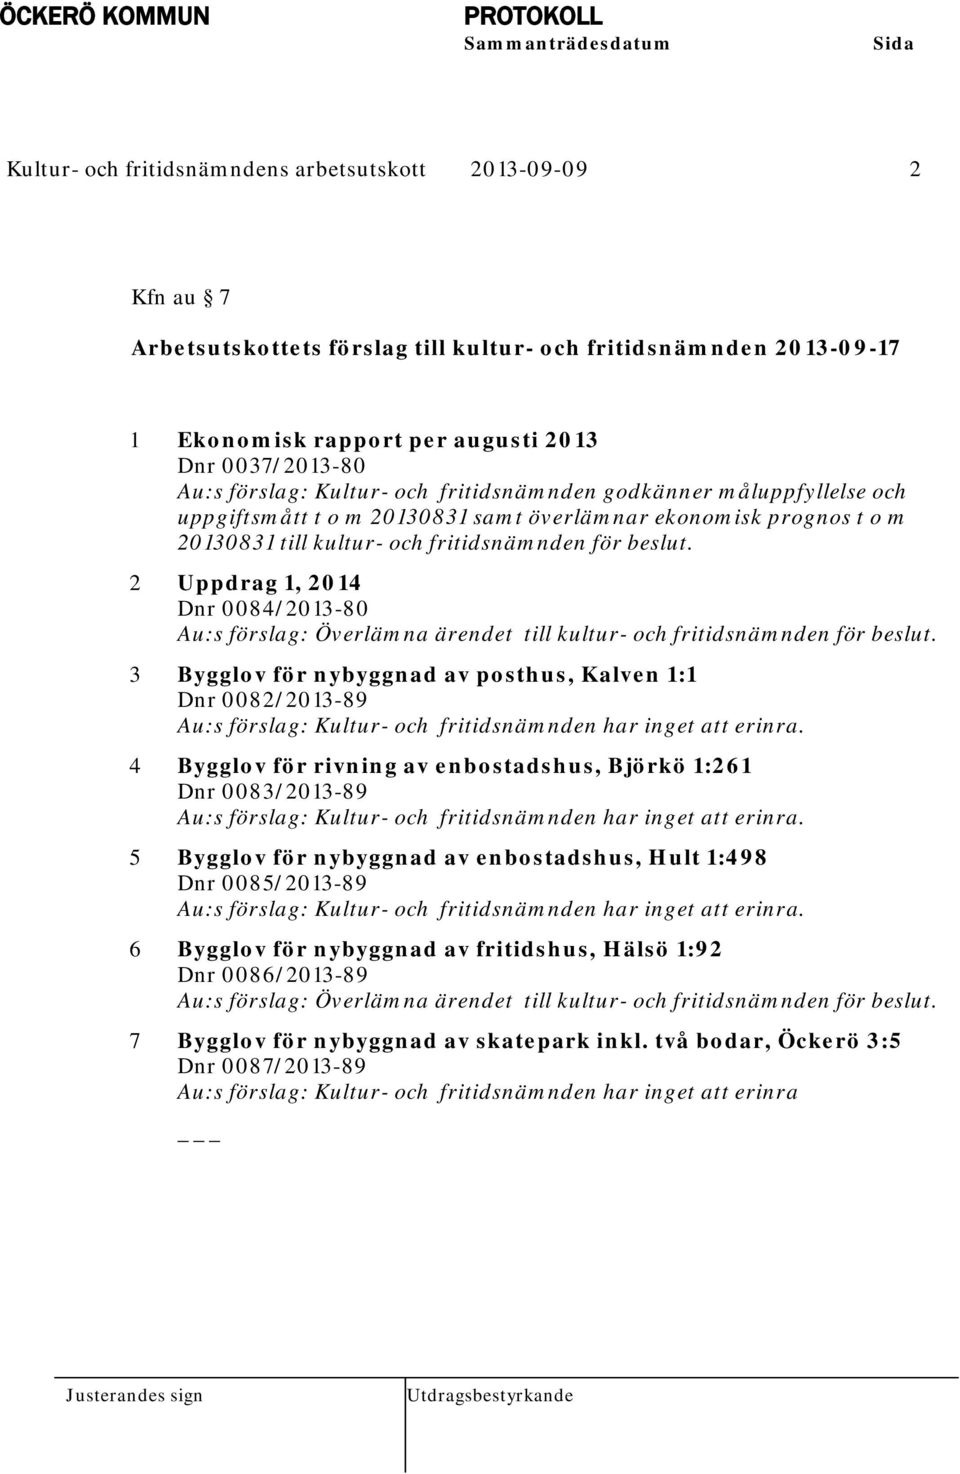 fritidsnämnden för beslut. 2 Uppdrag 1, 2014 Dnr 0084/2013-80 Au:s förslag: Överlämna ärendet till kultur- och fritidsnämnden för beslut.